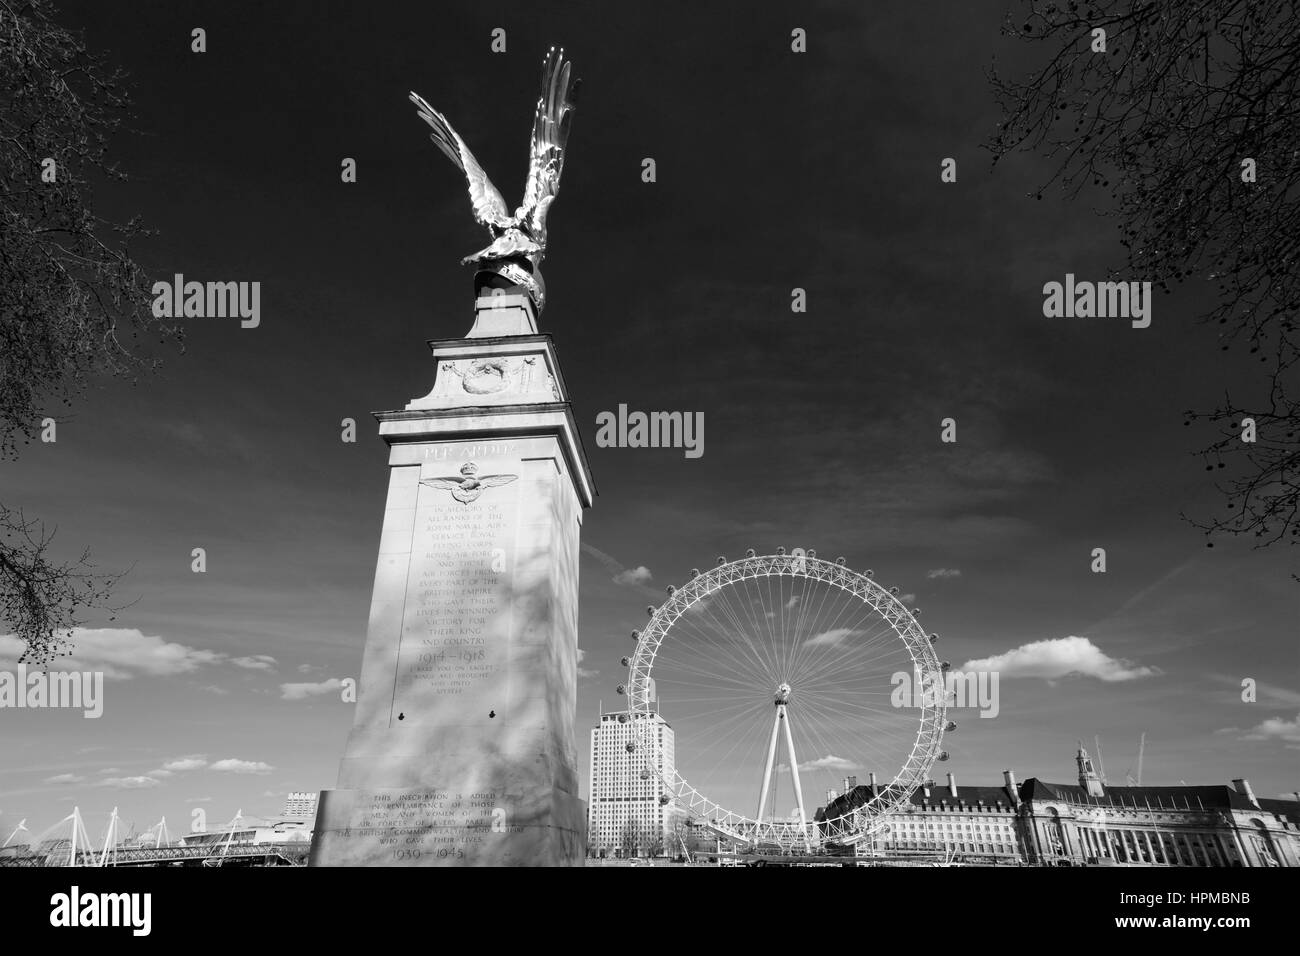 L'été. War Memorial et roue du millénaire, la banque du sud, tamise, Westminster, London city, England, UK Banque D'Images